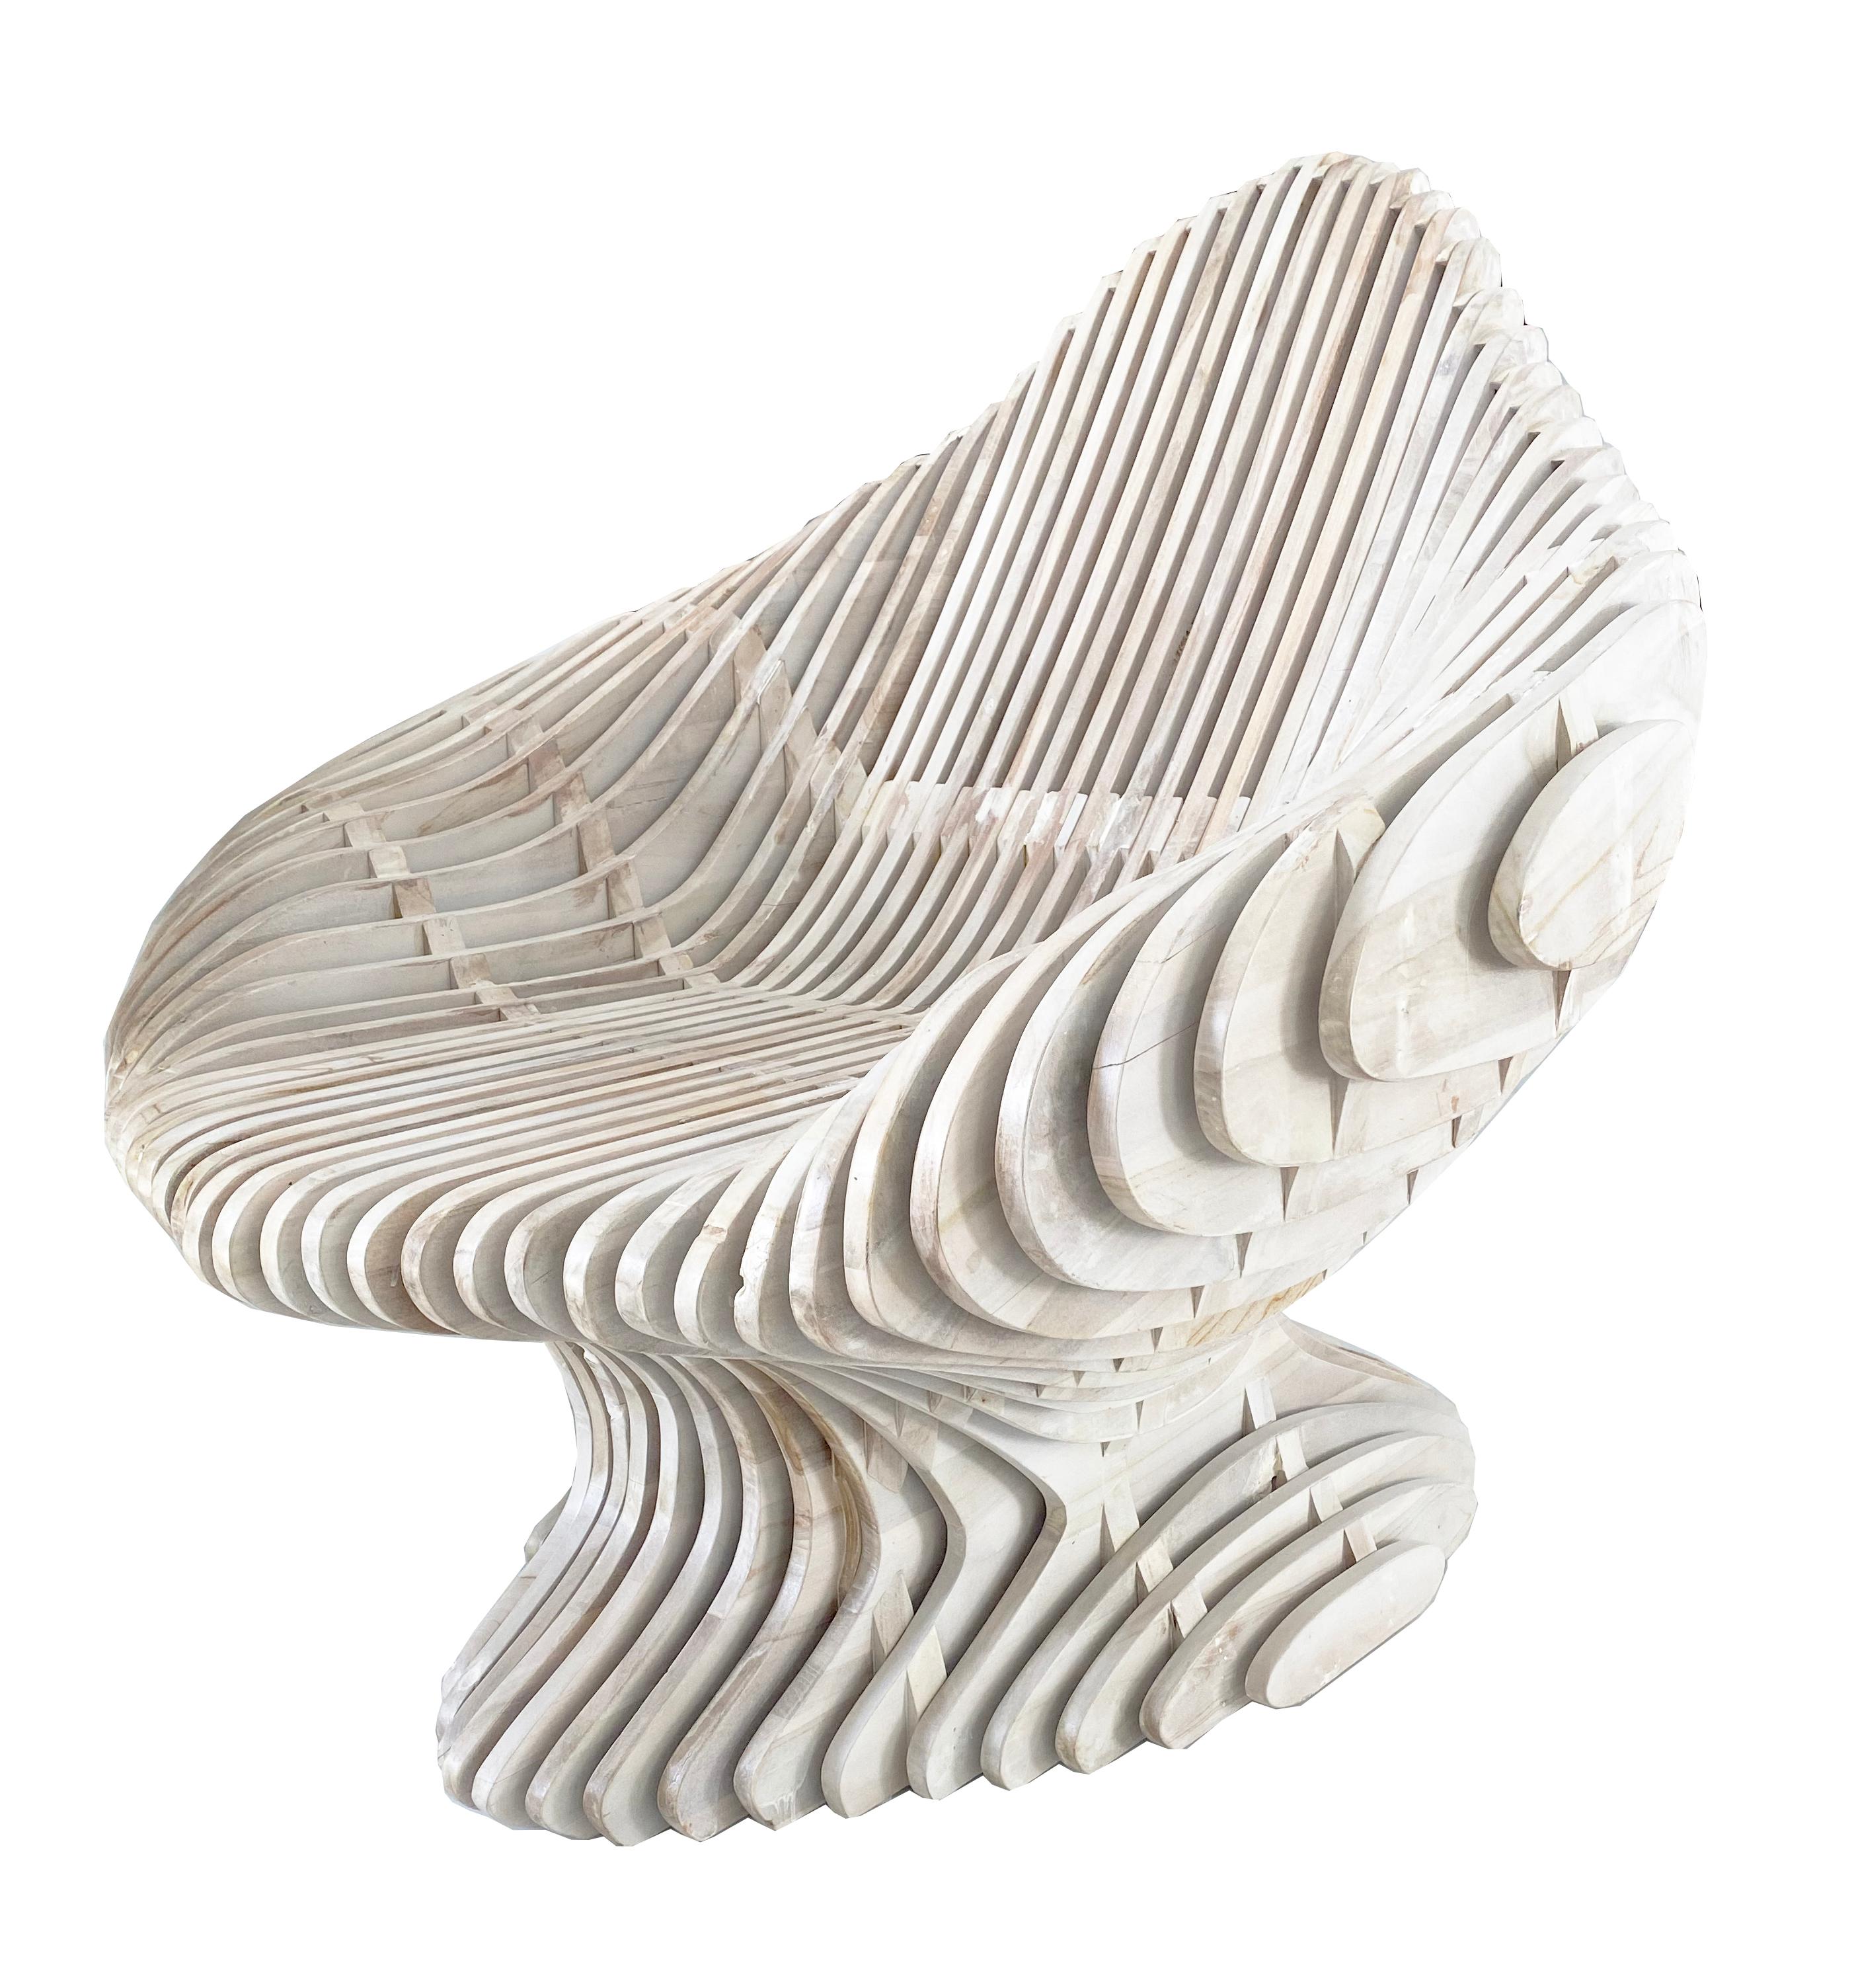 Trône paramétrique en édition limitée, fabriqué en bois de teck massif. Contrairement à la plupart des meubles paramétriques (qui sont fabriqués à la machine), cette pièce est entièrement réalisée à la main. Chaque chaise est unique et présente une